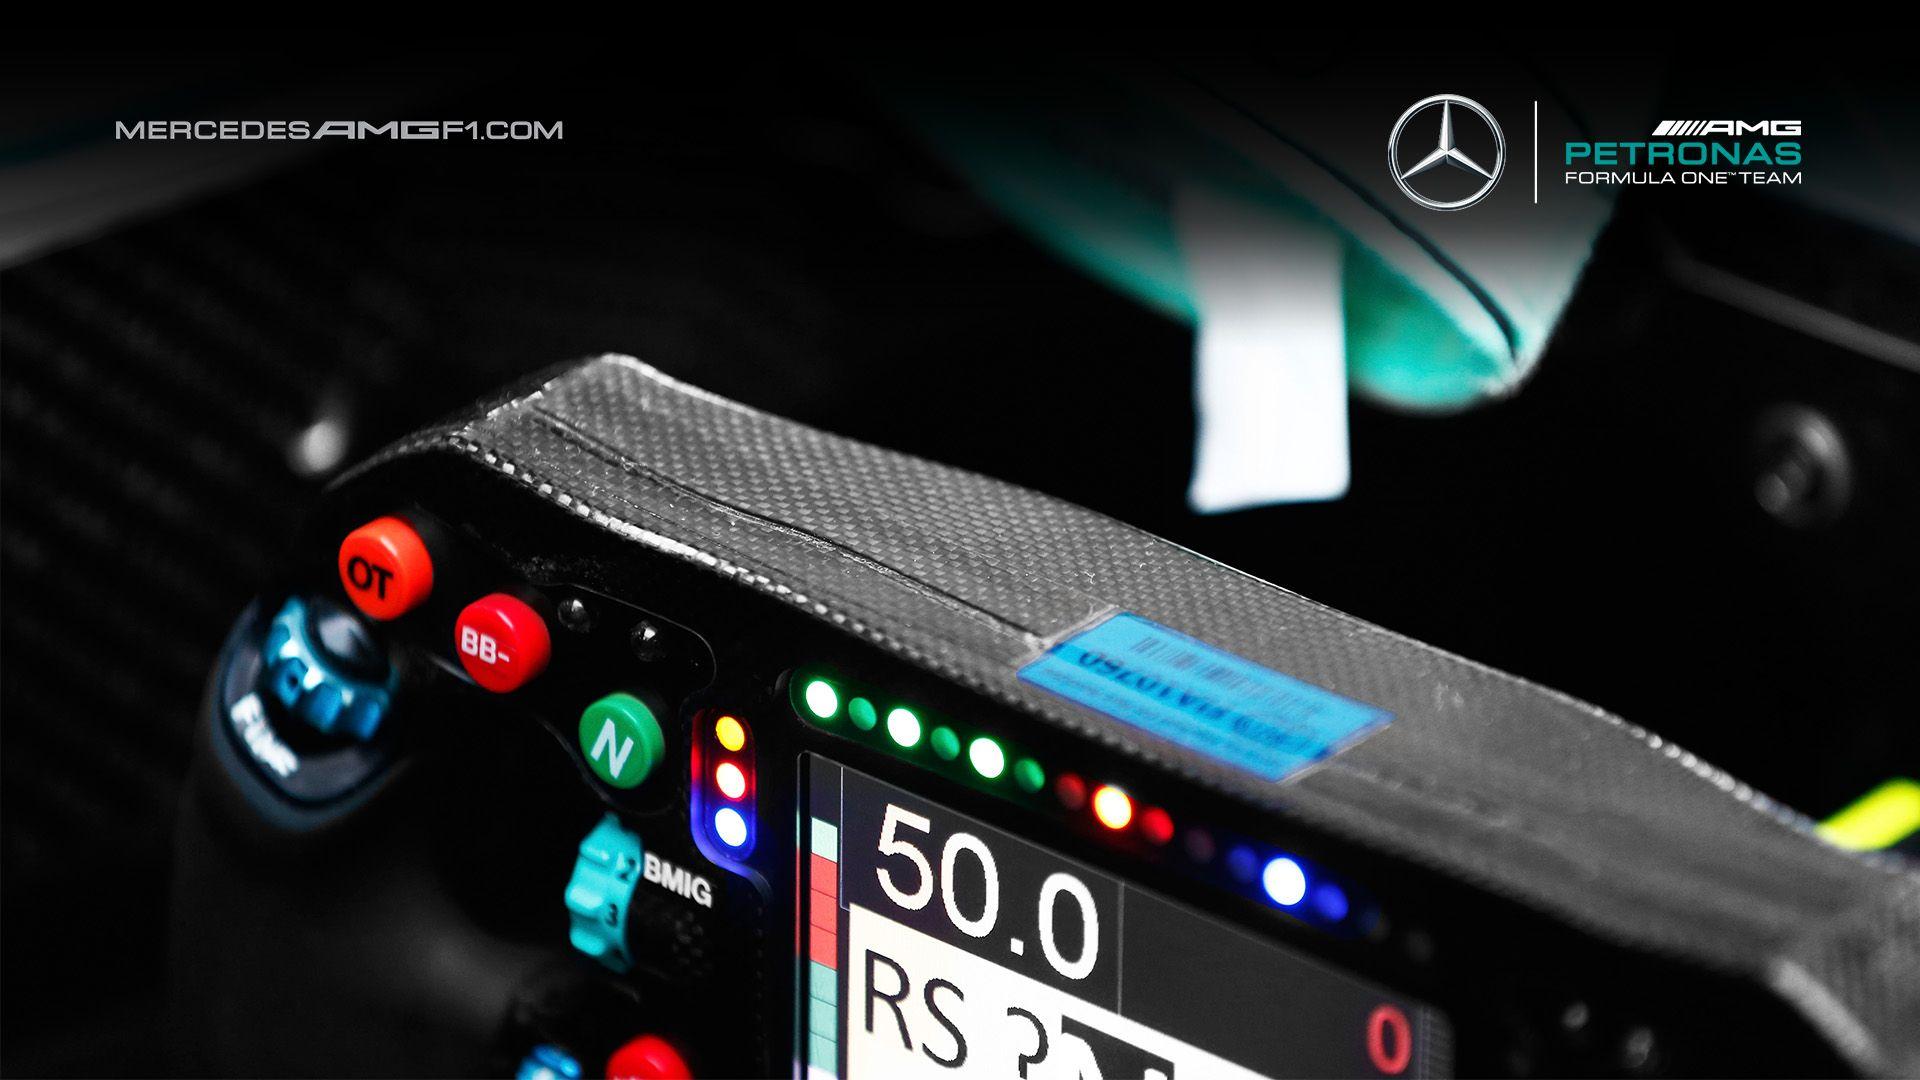 Mercedes Amg F1 Wallpaper, PC Mercedes Amg F1 Wallpaper Most